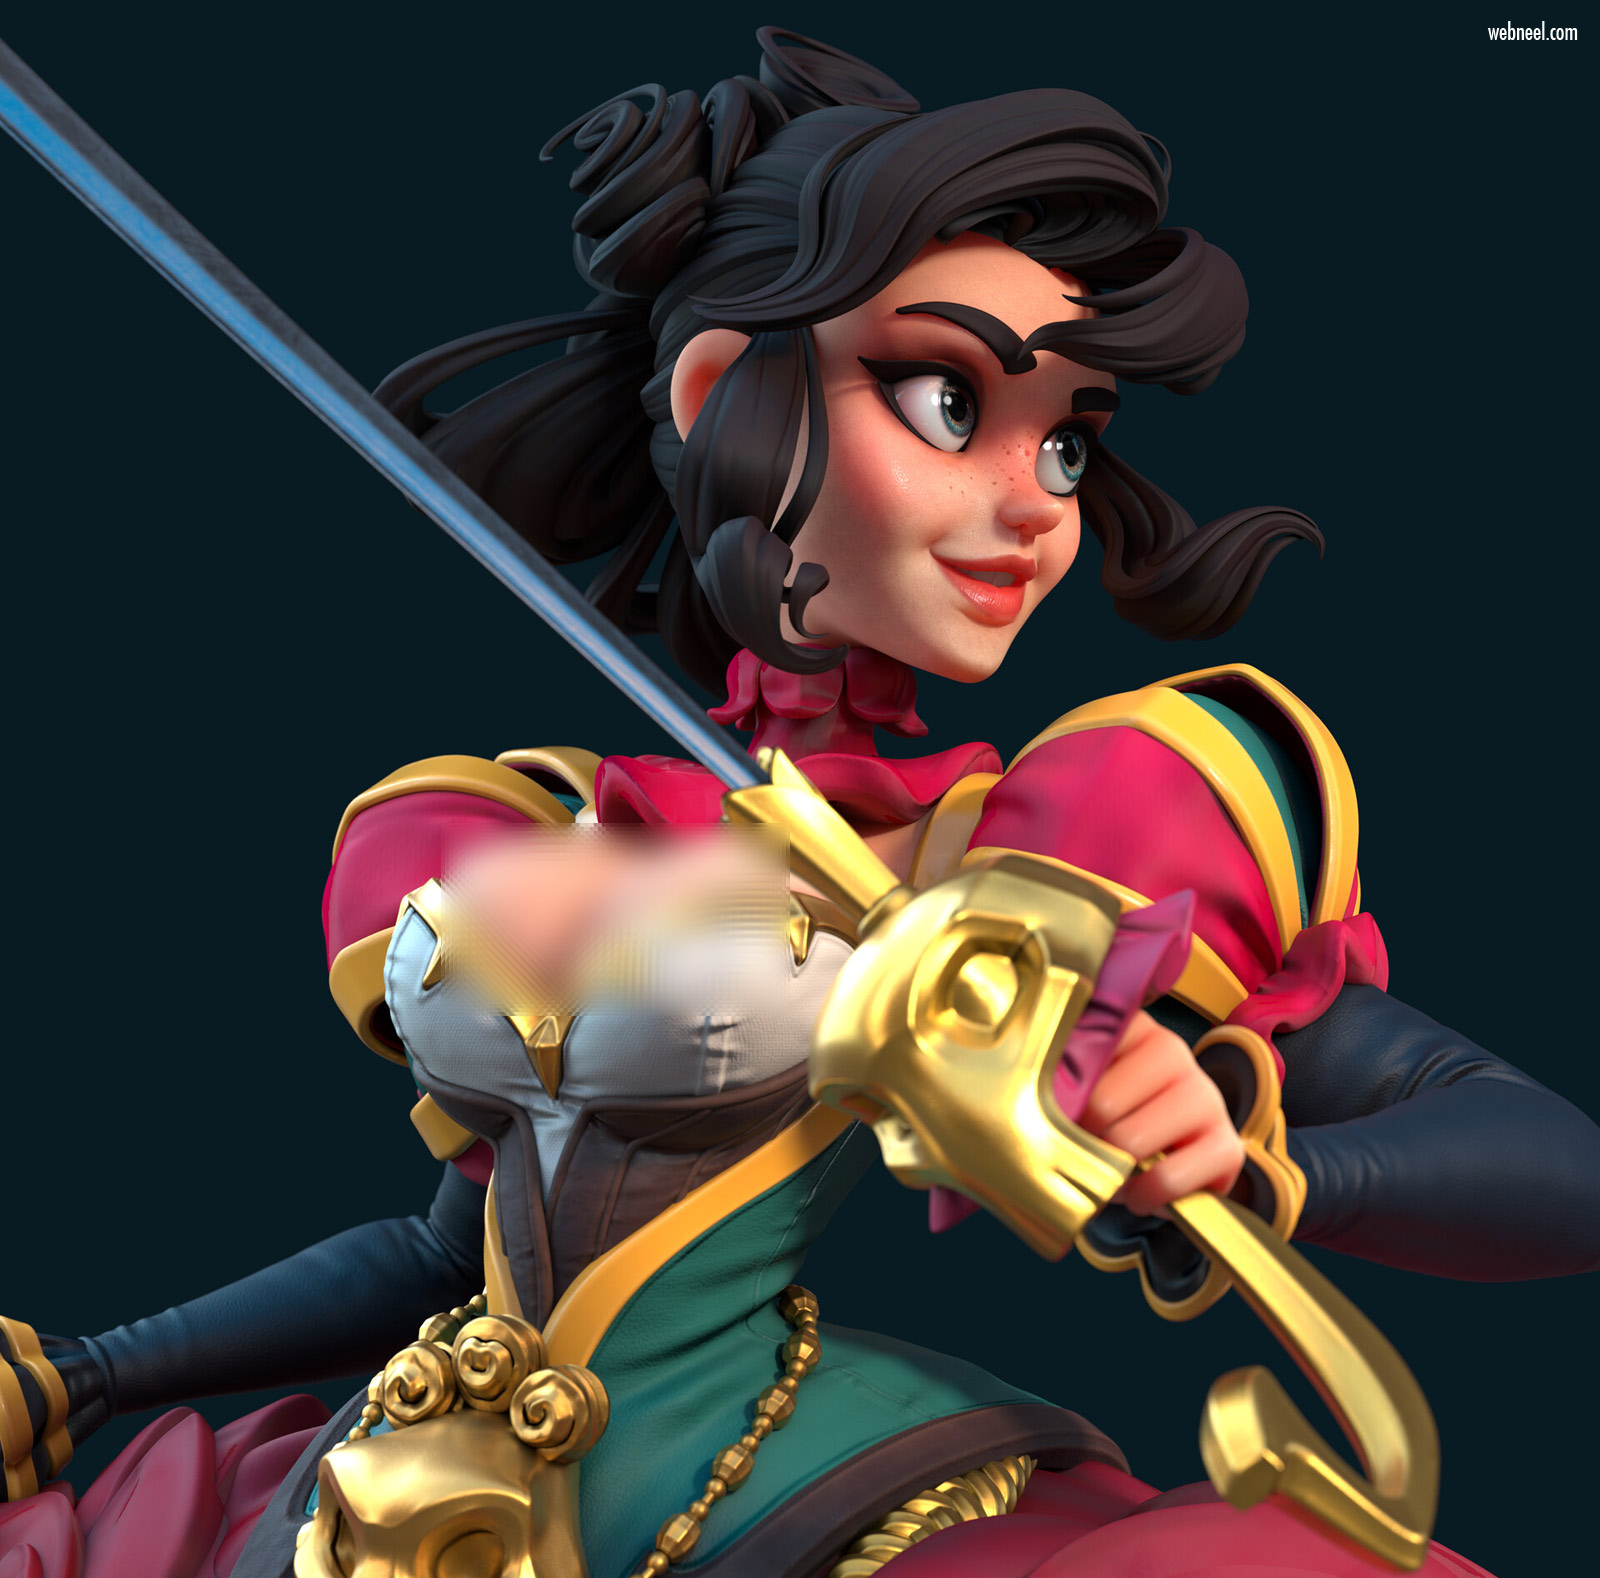 3d model character design girl fighter fantasy